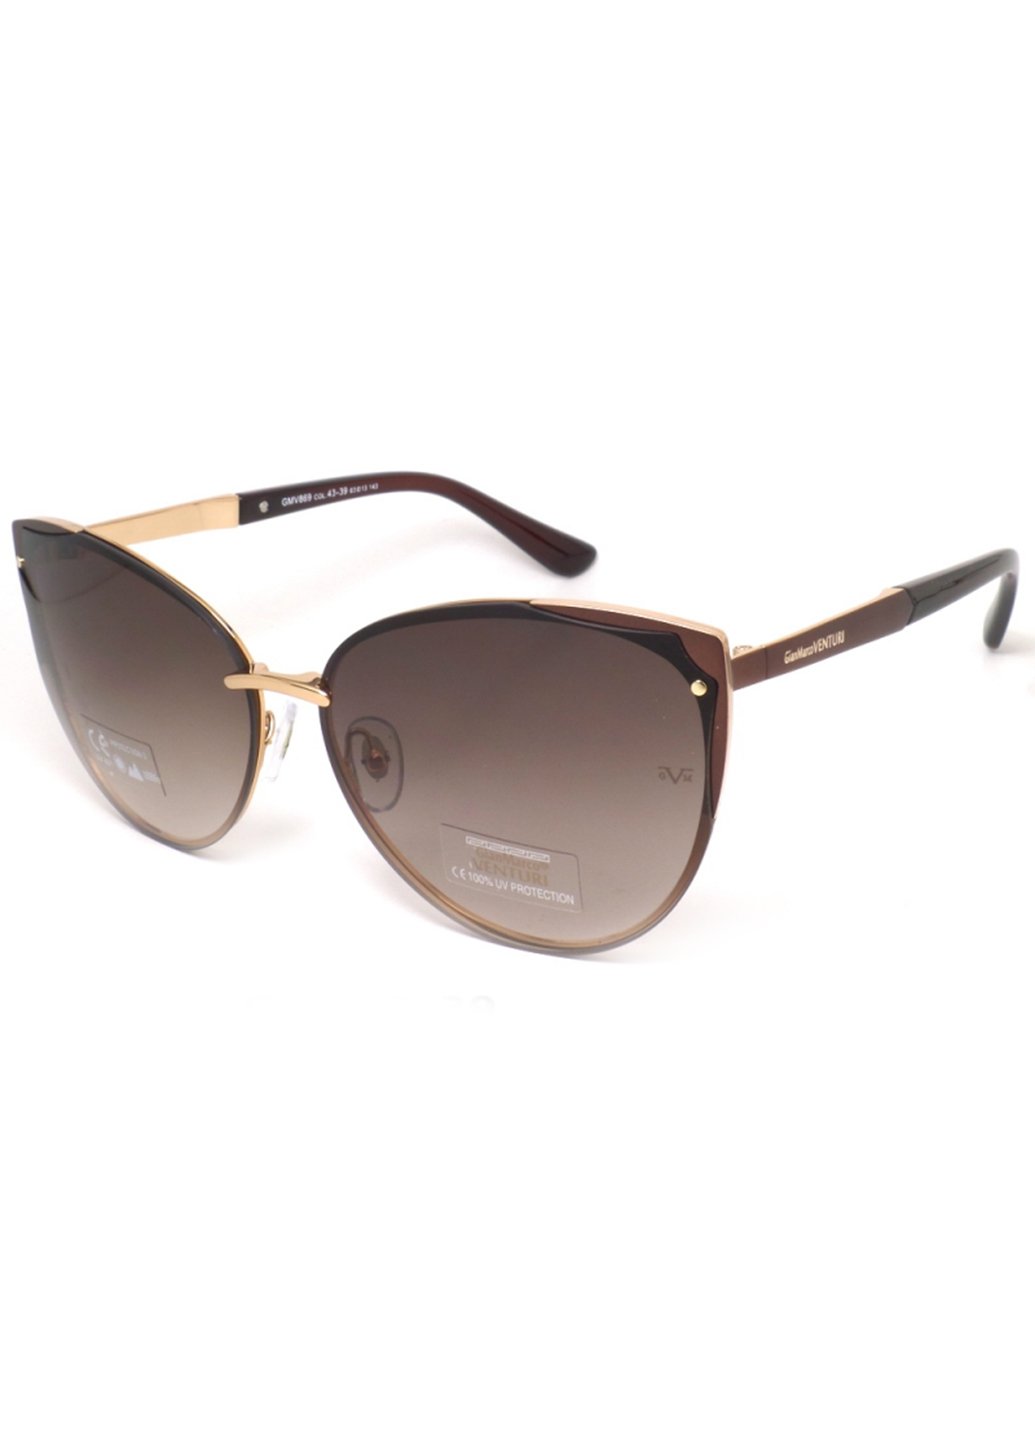 Купить Женские солнцезащитные очки Gian Marco VENTURI GMV869 130013 - Коричневый в интернет-магазине